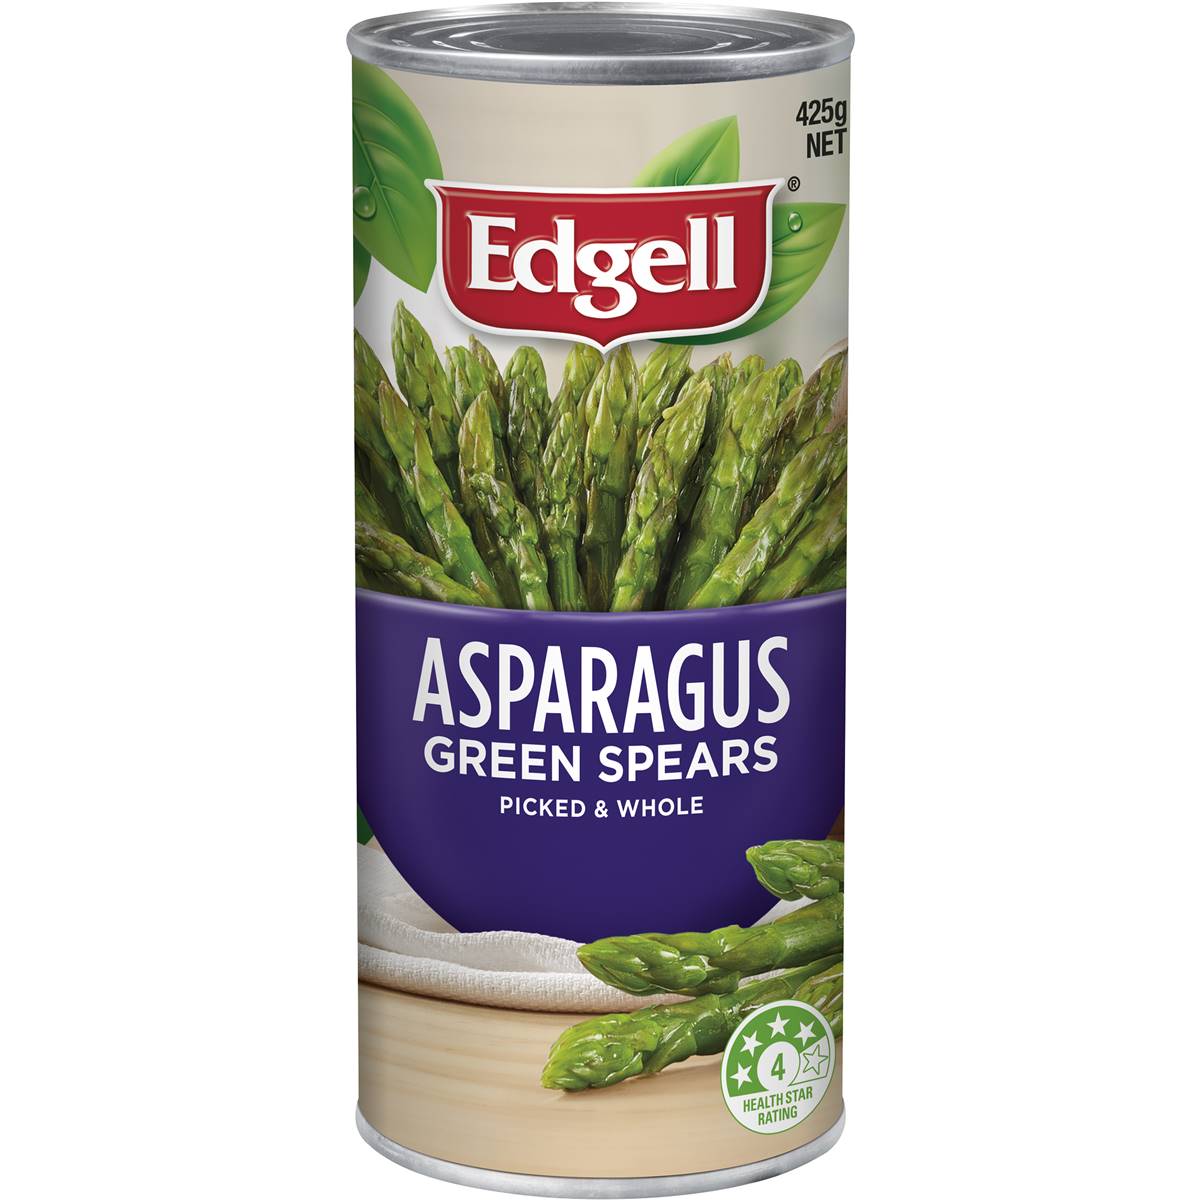 Calories in Edgell Asparagus Spears